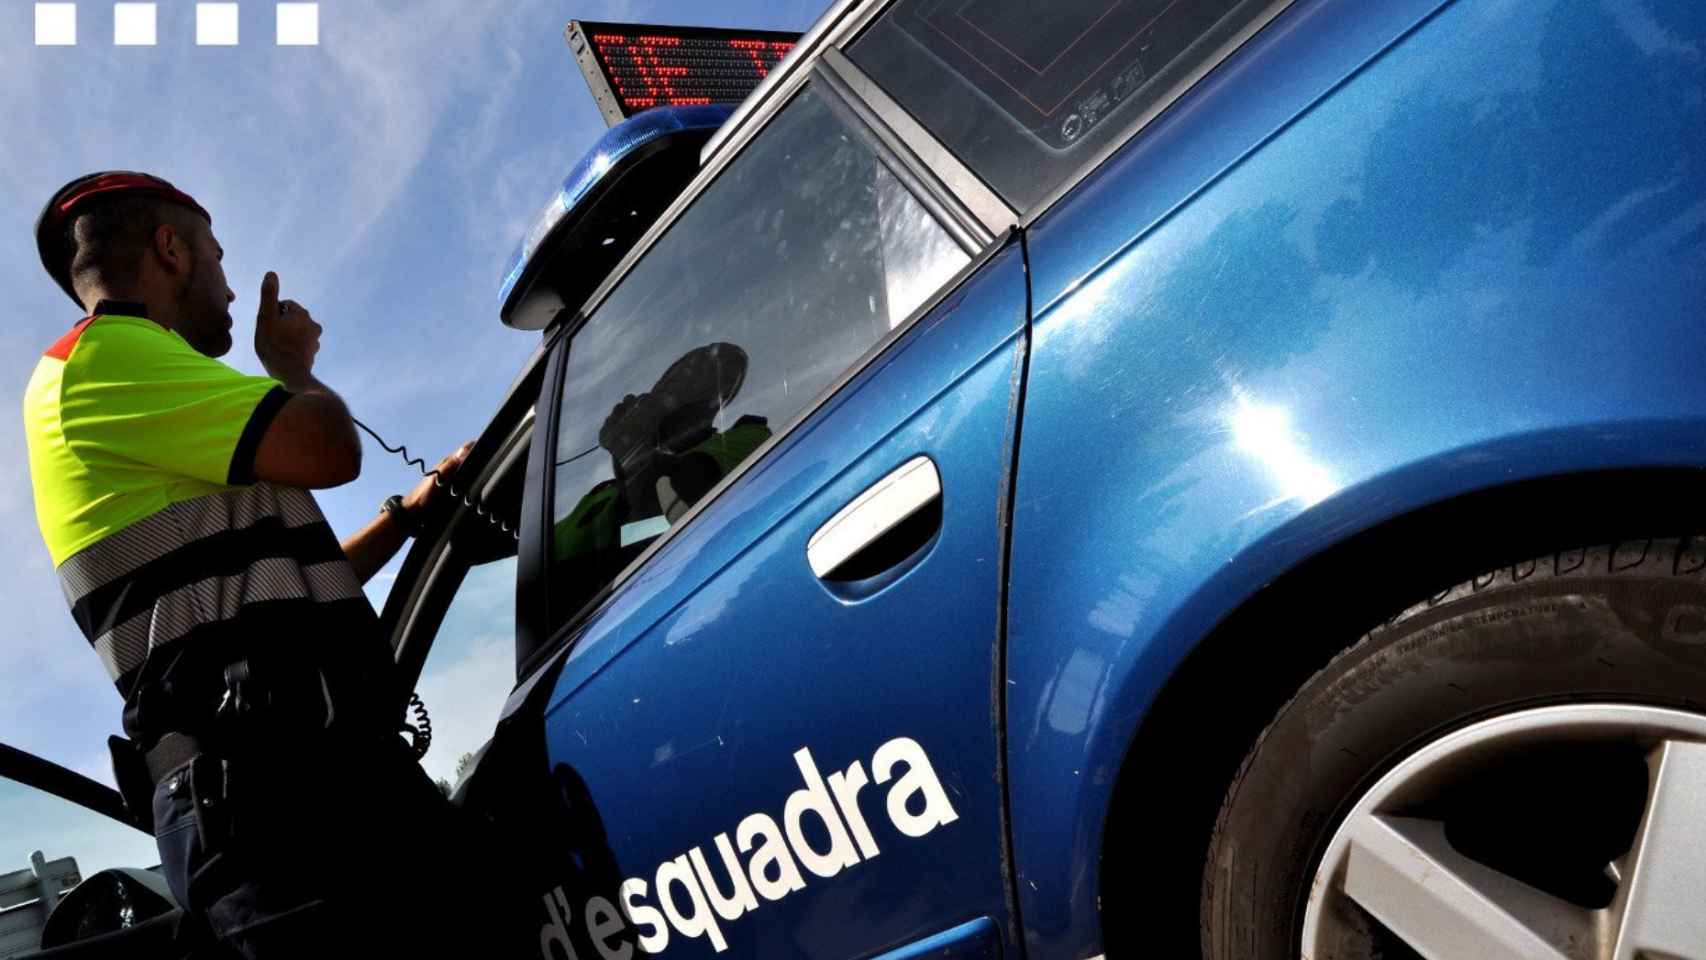 Un agente de los Mossos d'Esquadra junto al coche patrulla / MOSSOS D'ESQUADRA